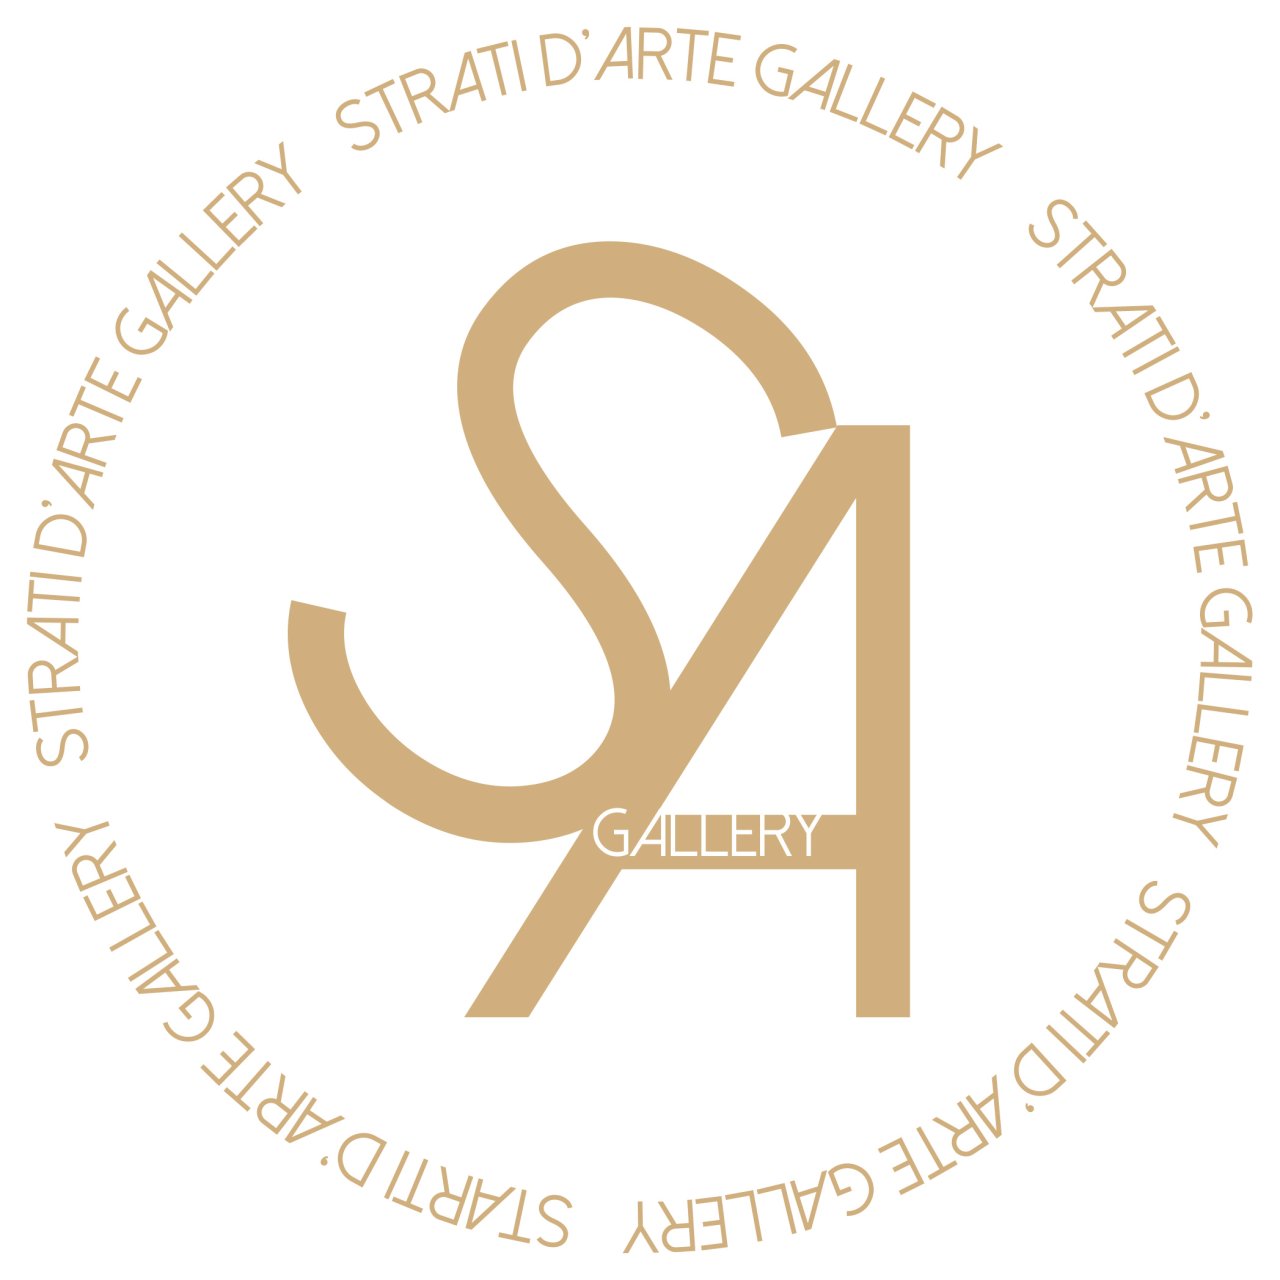 Strati D'Arte Gallery